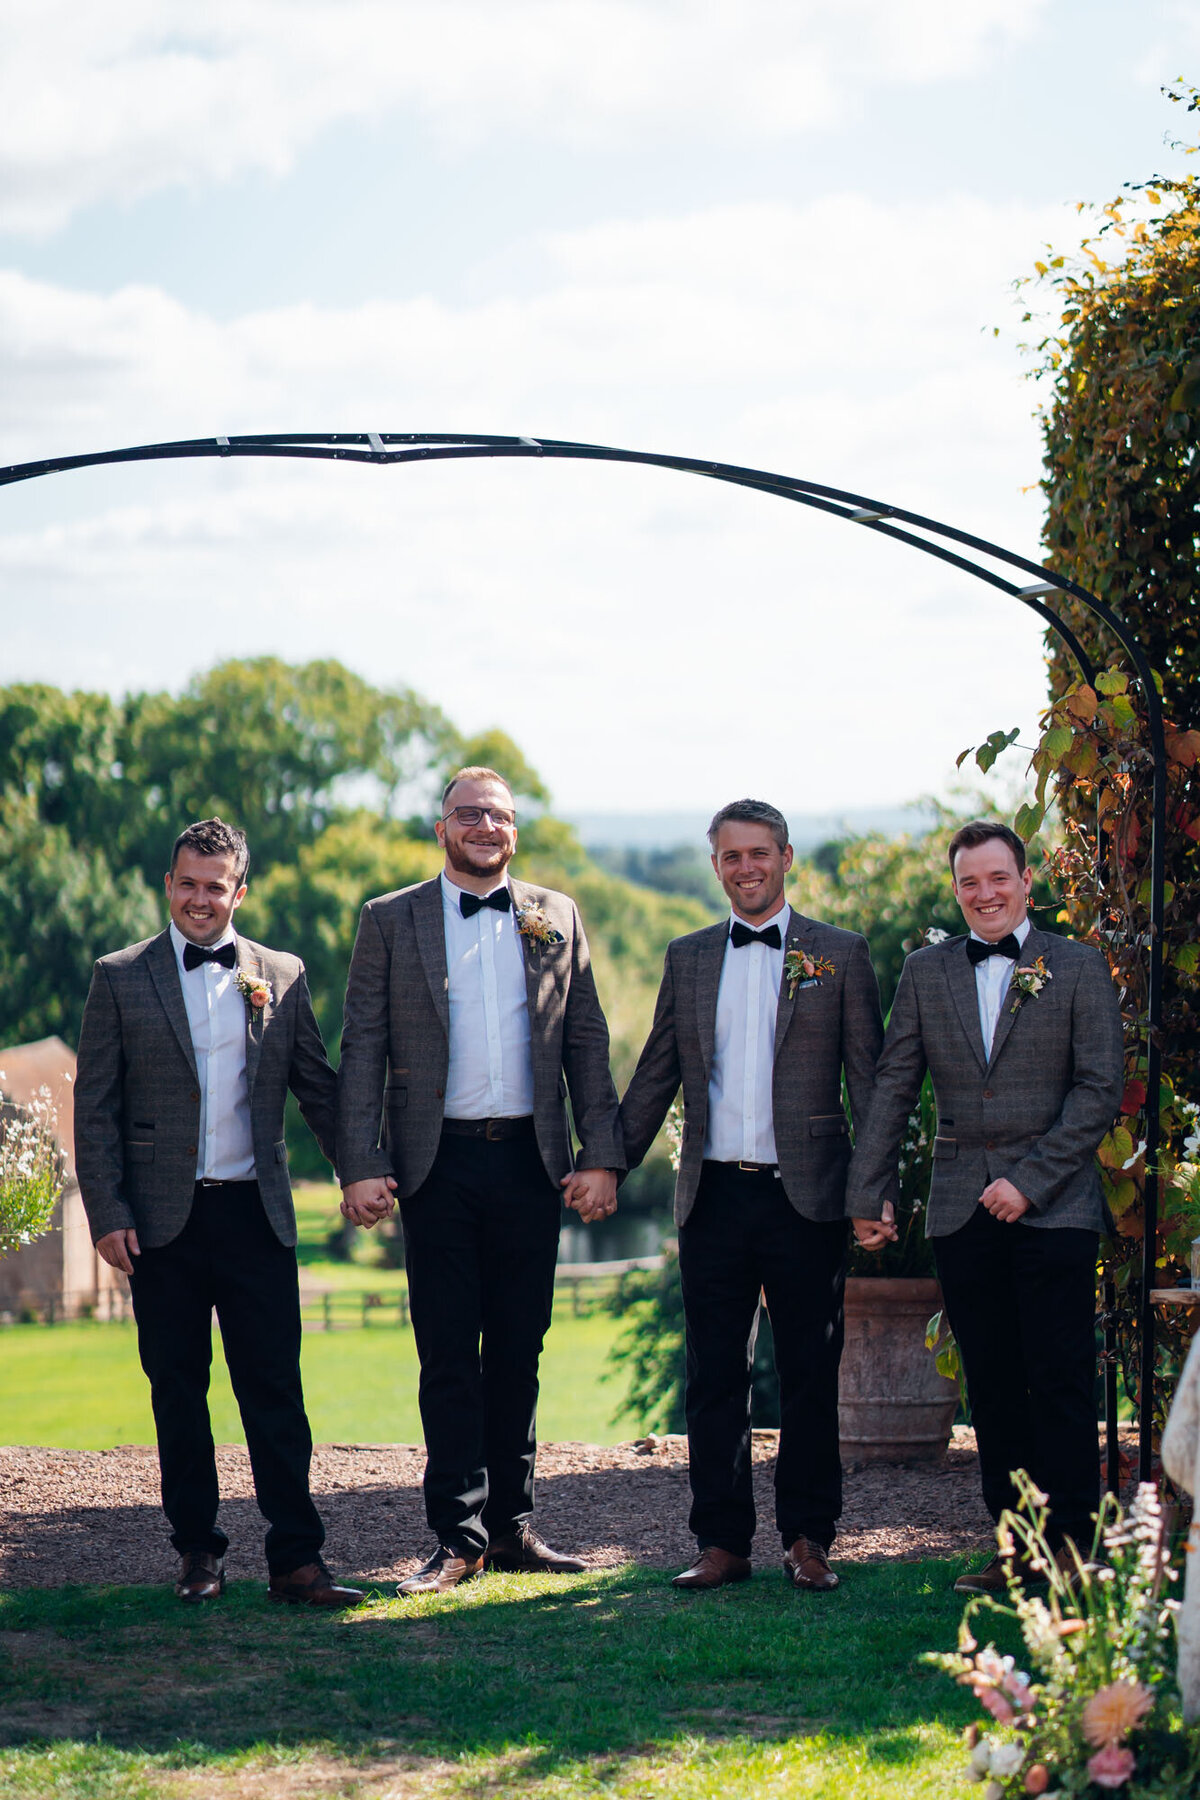 Pauntley-court-wedding-photographer-groomsmen-during-outdoor-ceremony